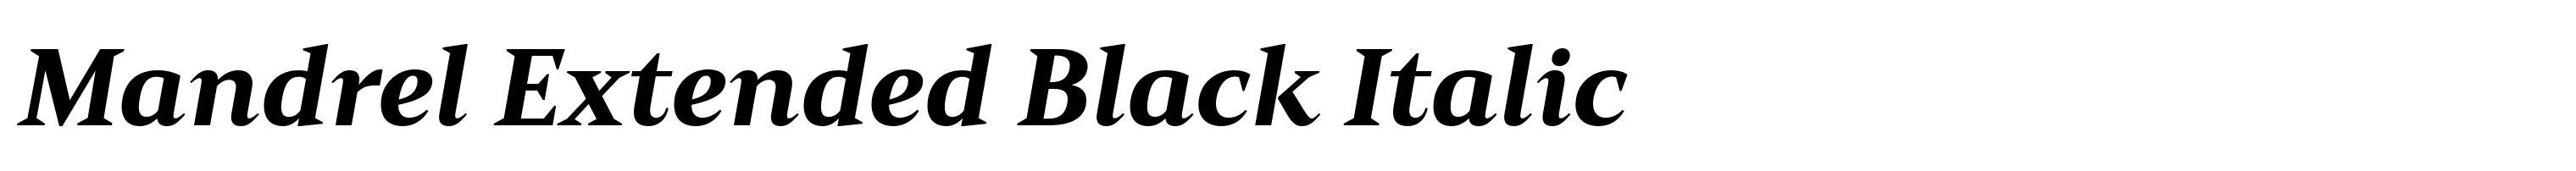 Mandrel Extended Black Italic